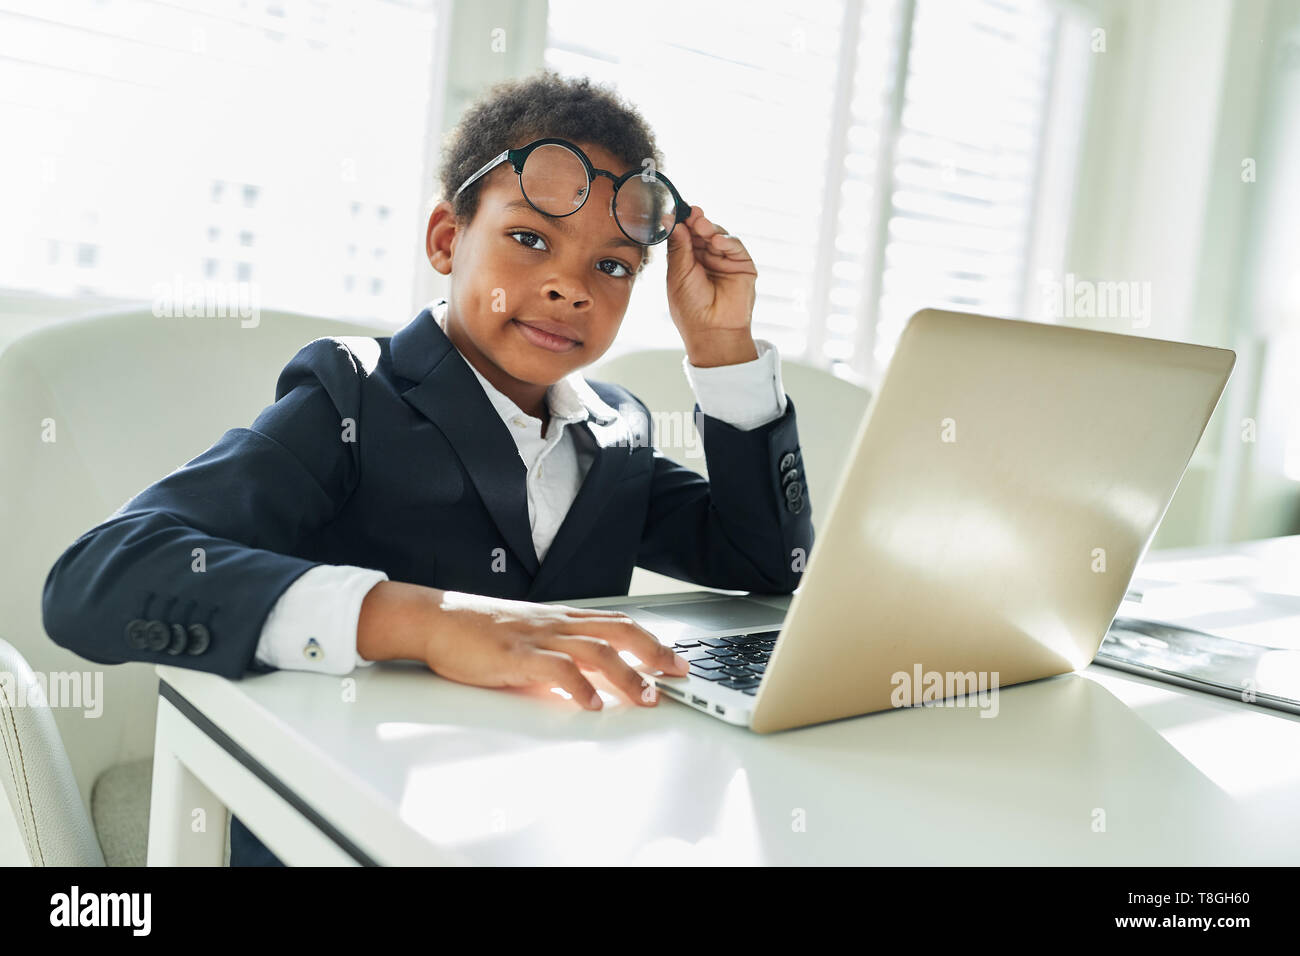 African boy en tant que gestionnaire ou d'un avocat avec des lunettes on laptop computer Banque D'Images